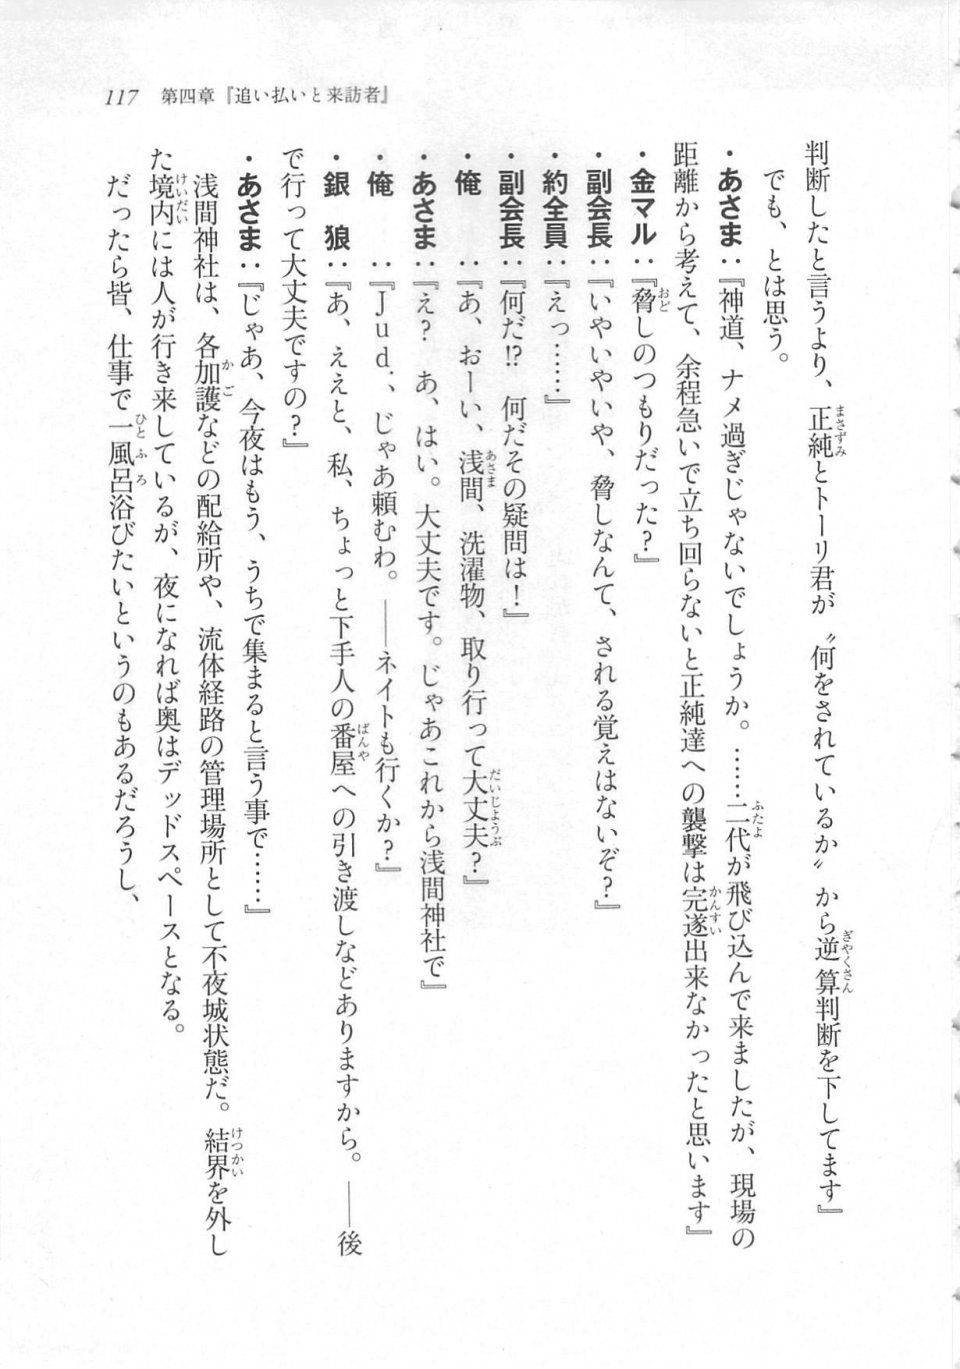 Kyoukai Senjou no Horizon LN Sidestory Vol 3 - Photo #121